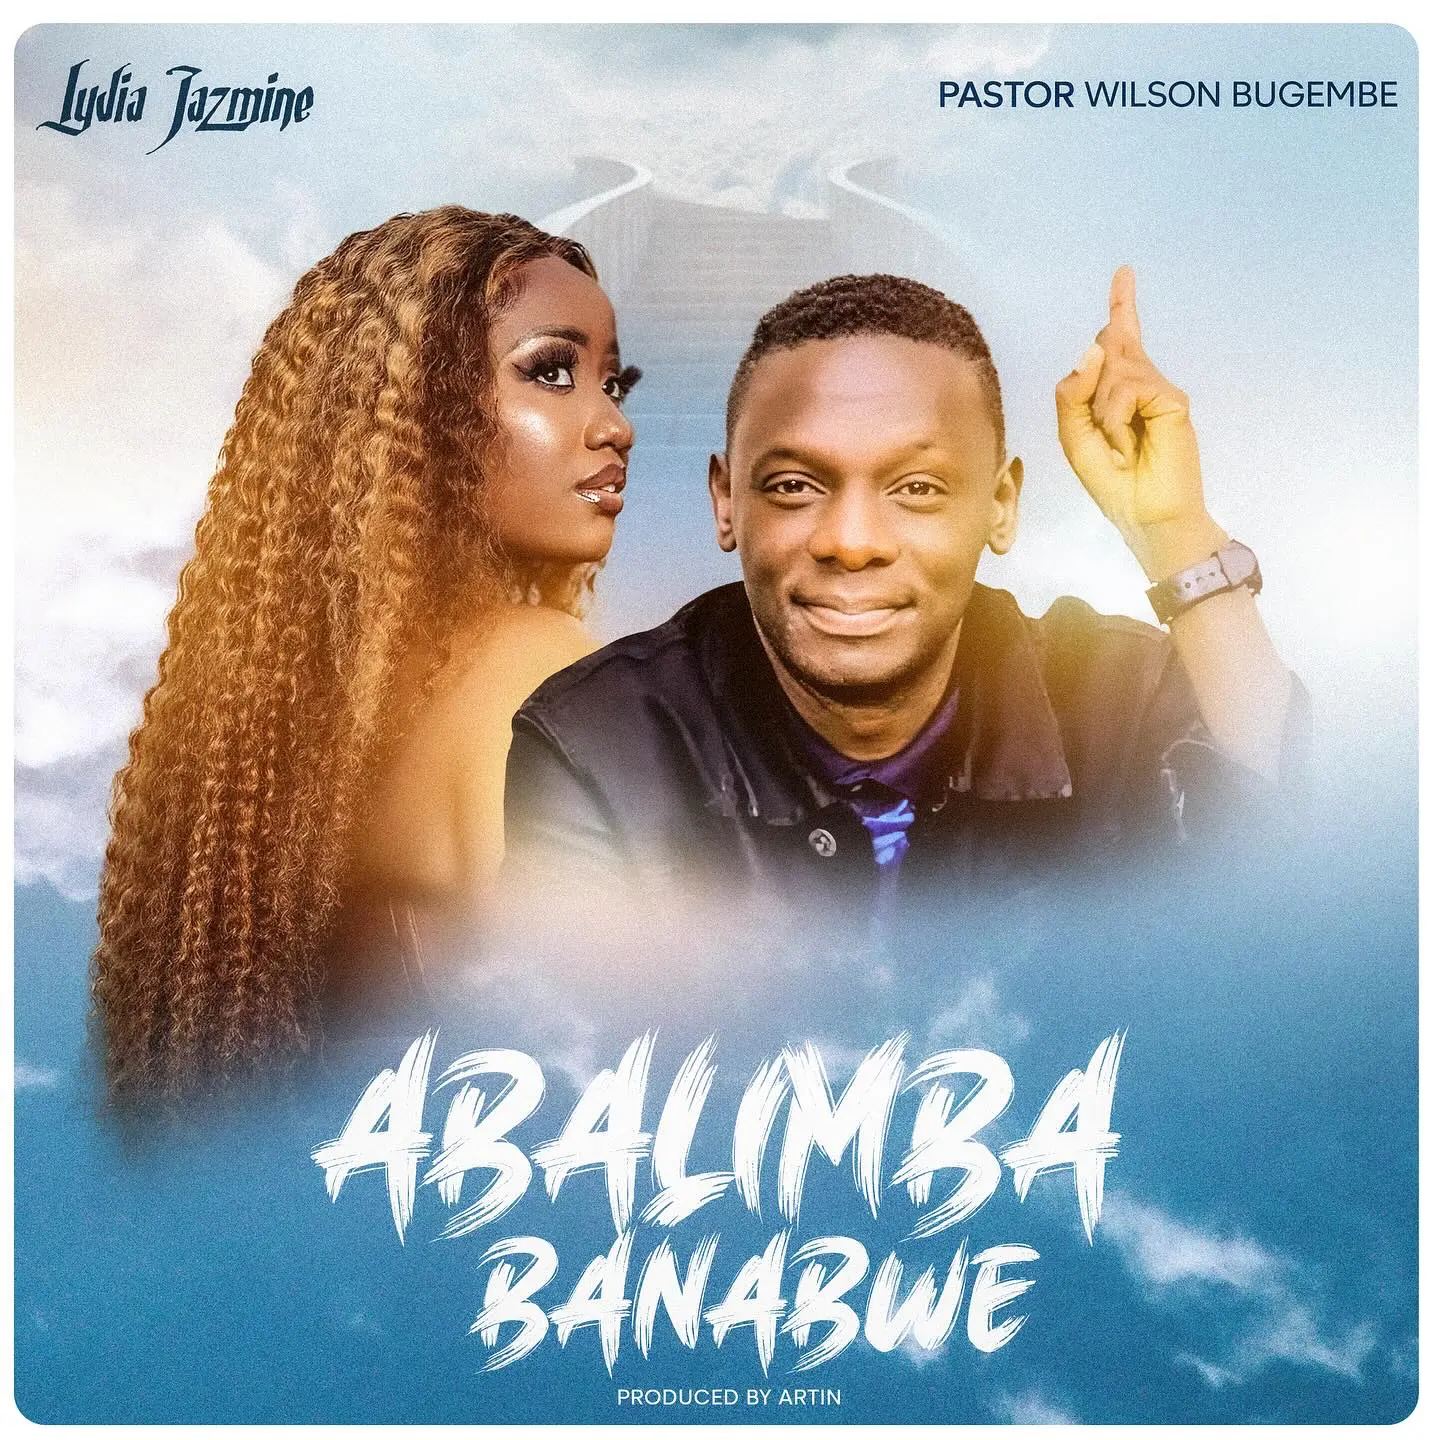 lydia-jazmine-abalimba-banabwe-album-cover